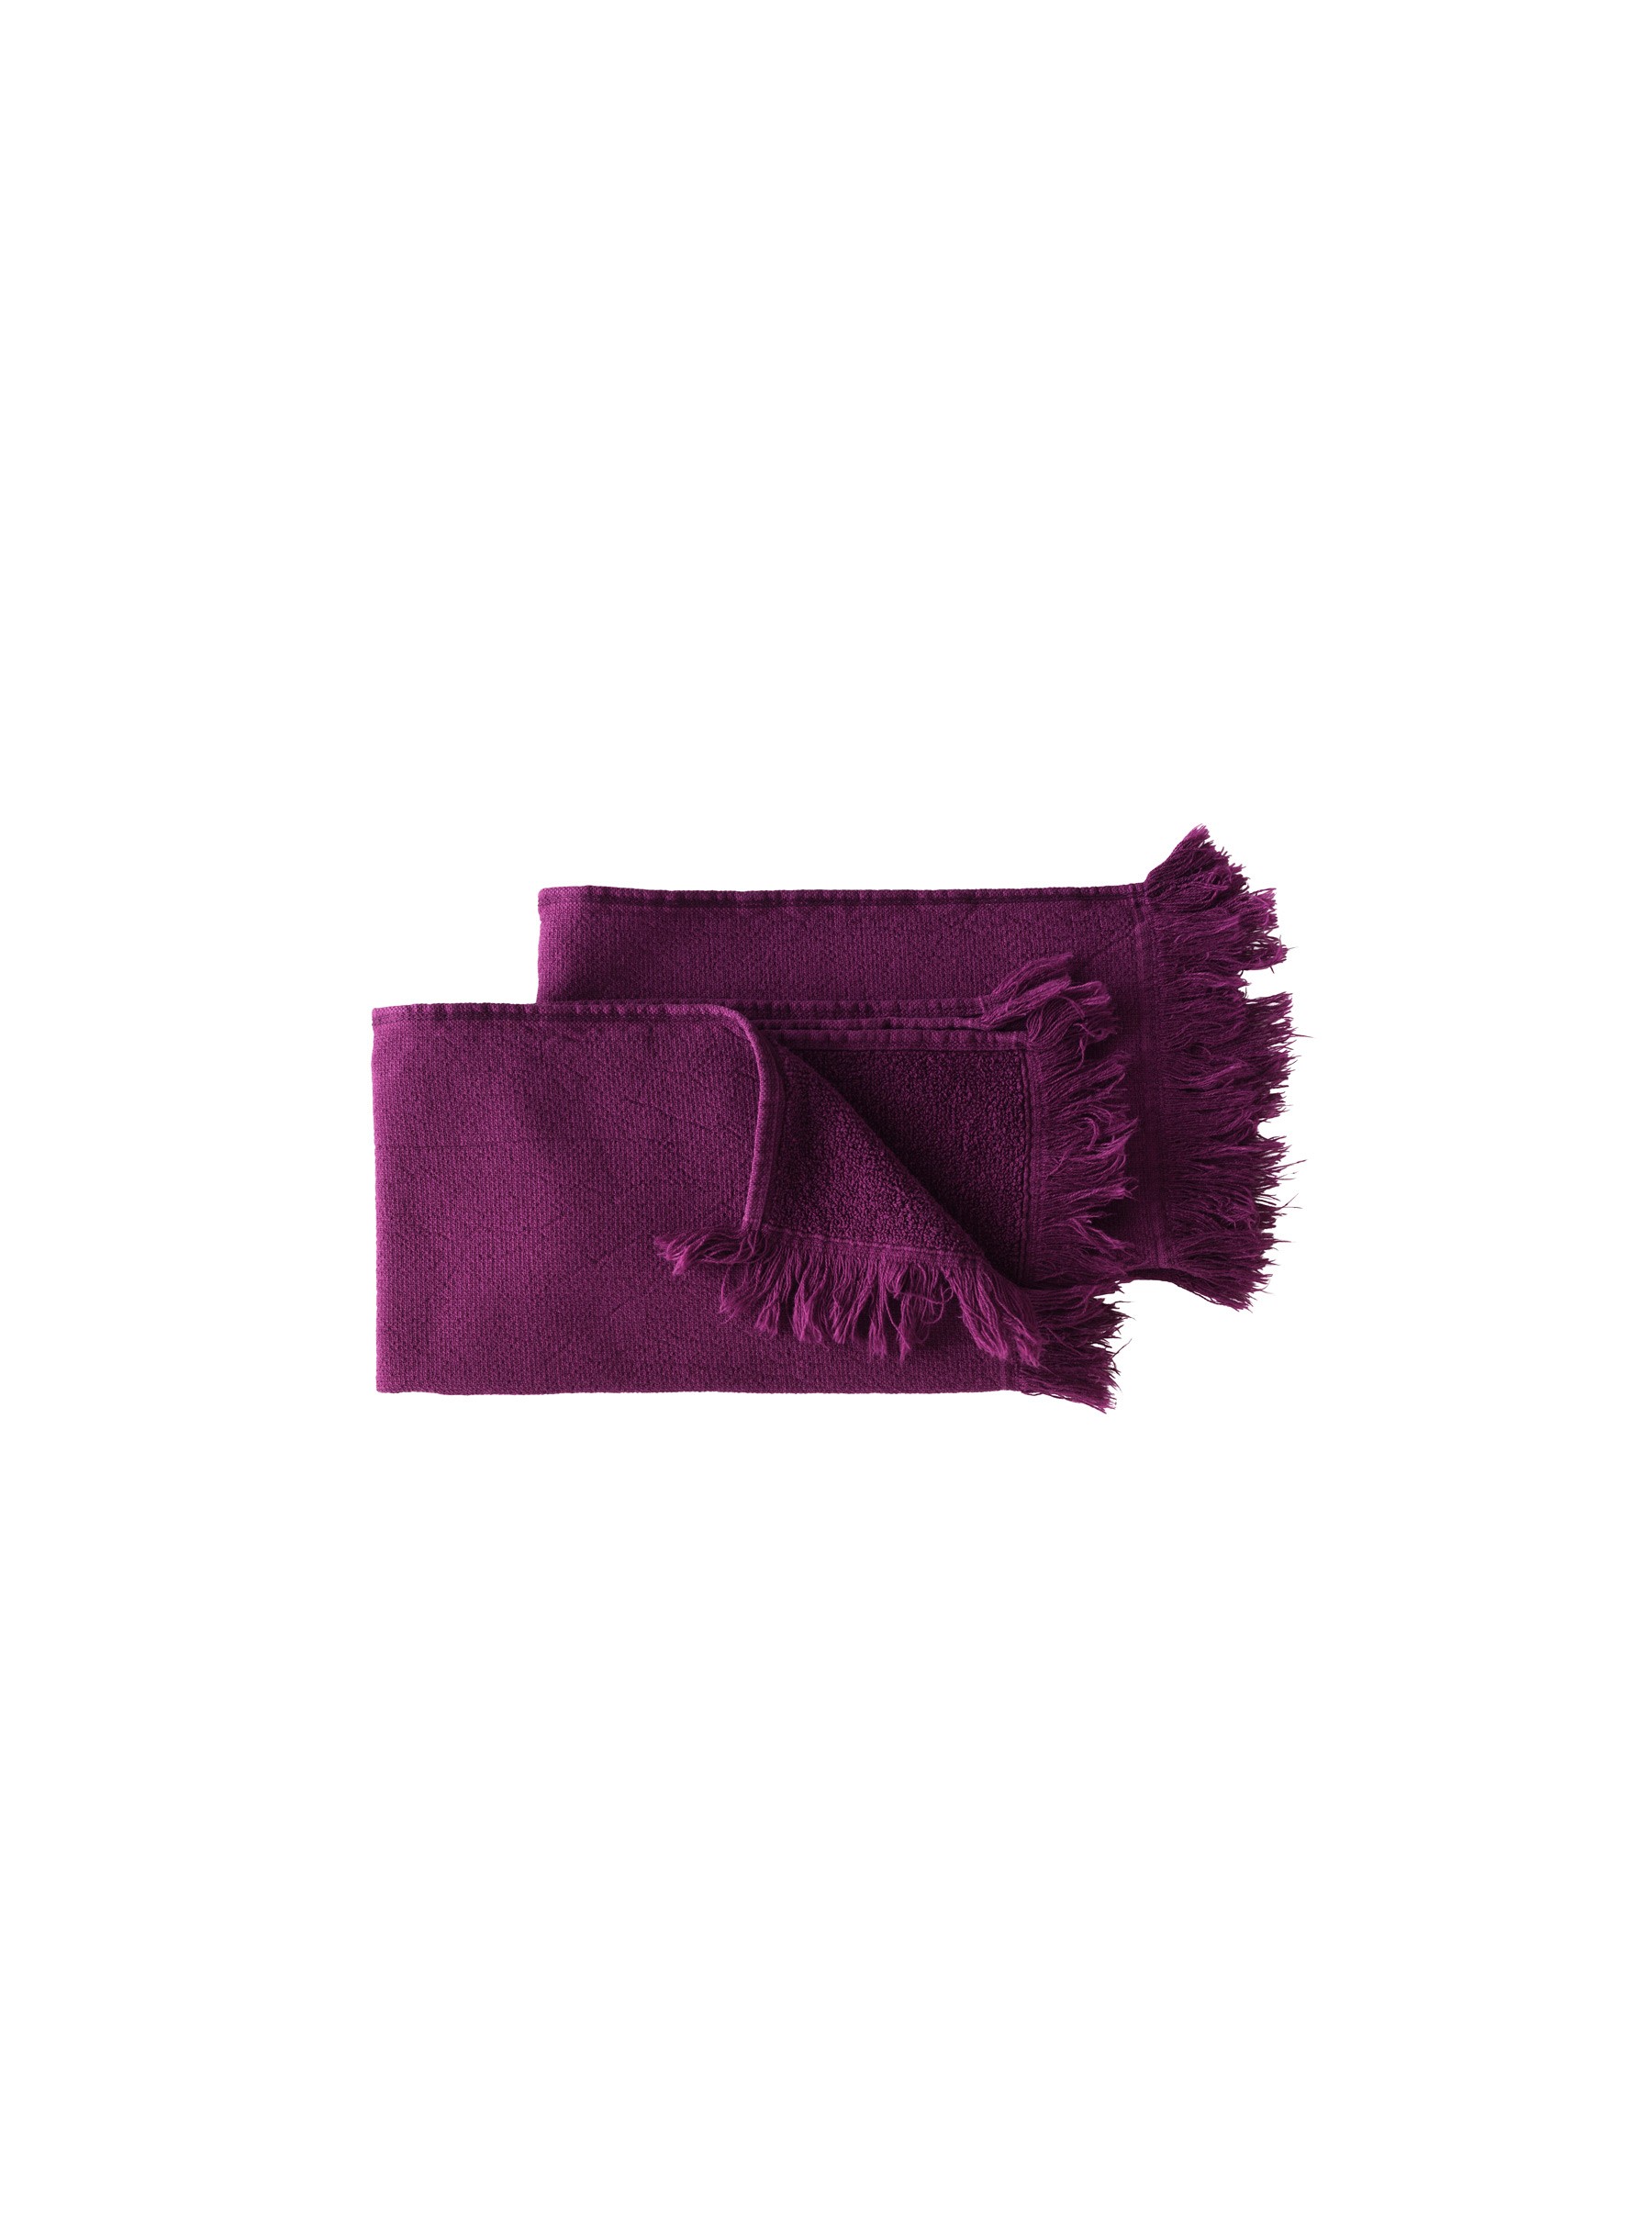 Serviettes invités coton bio violettes